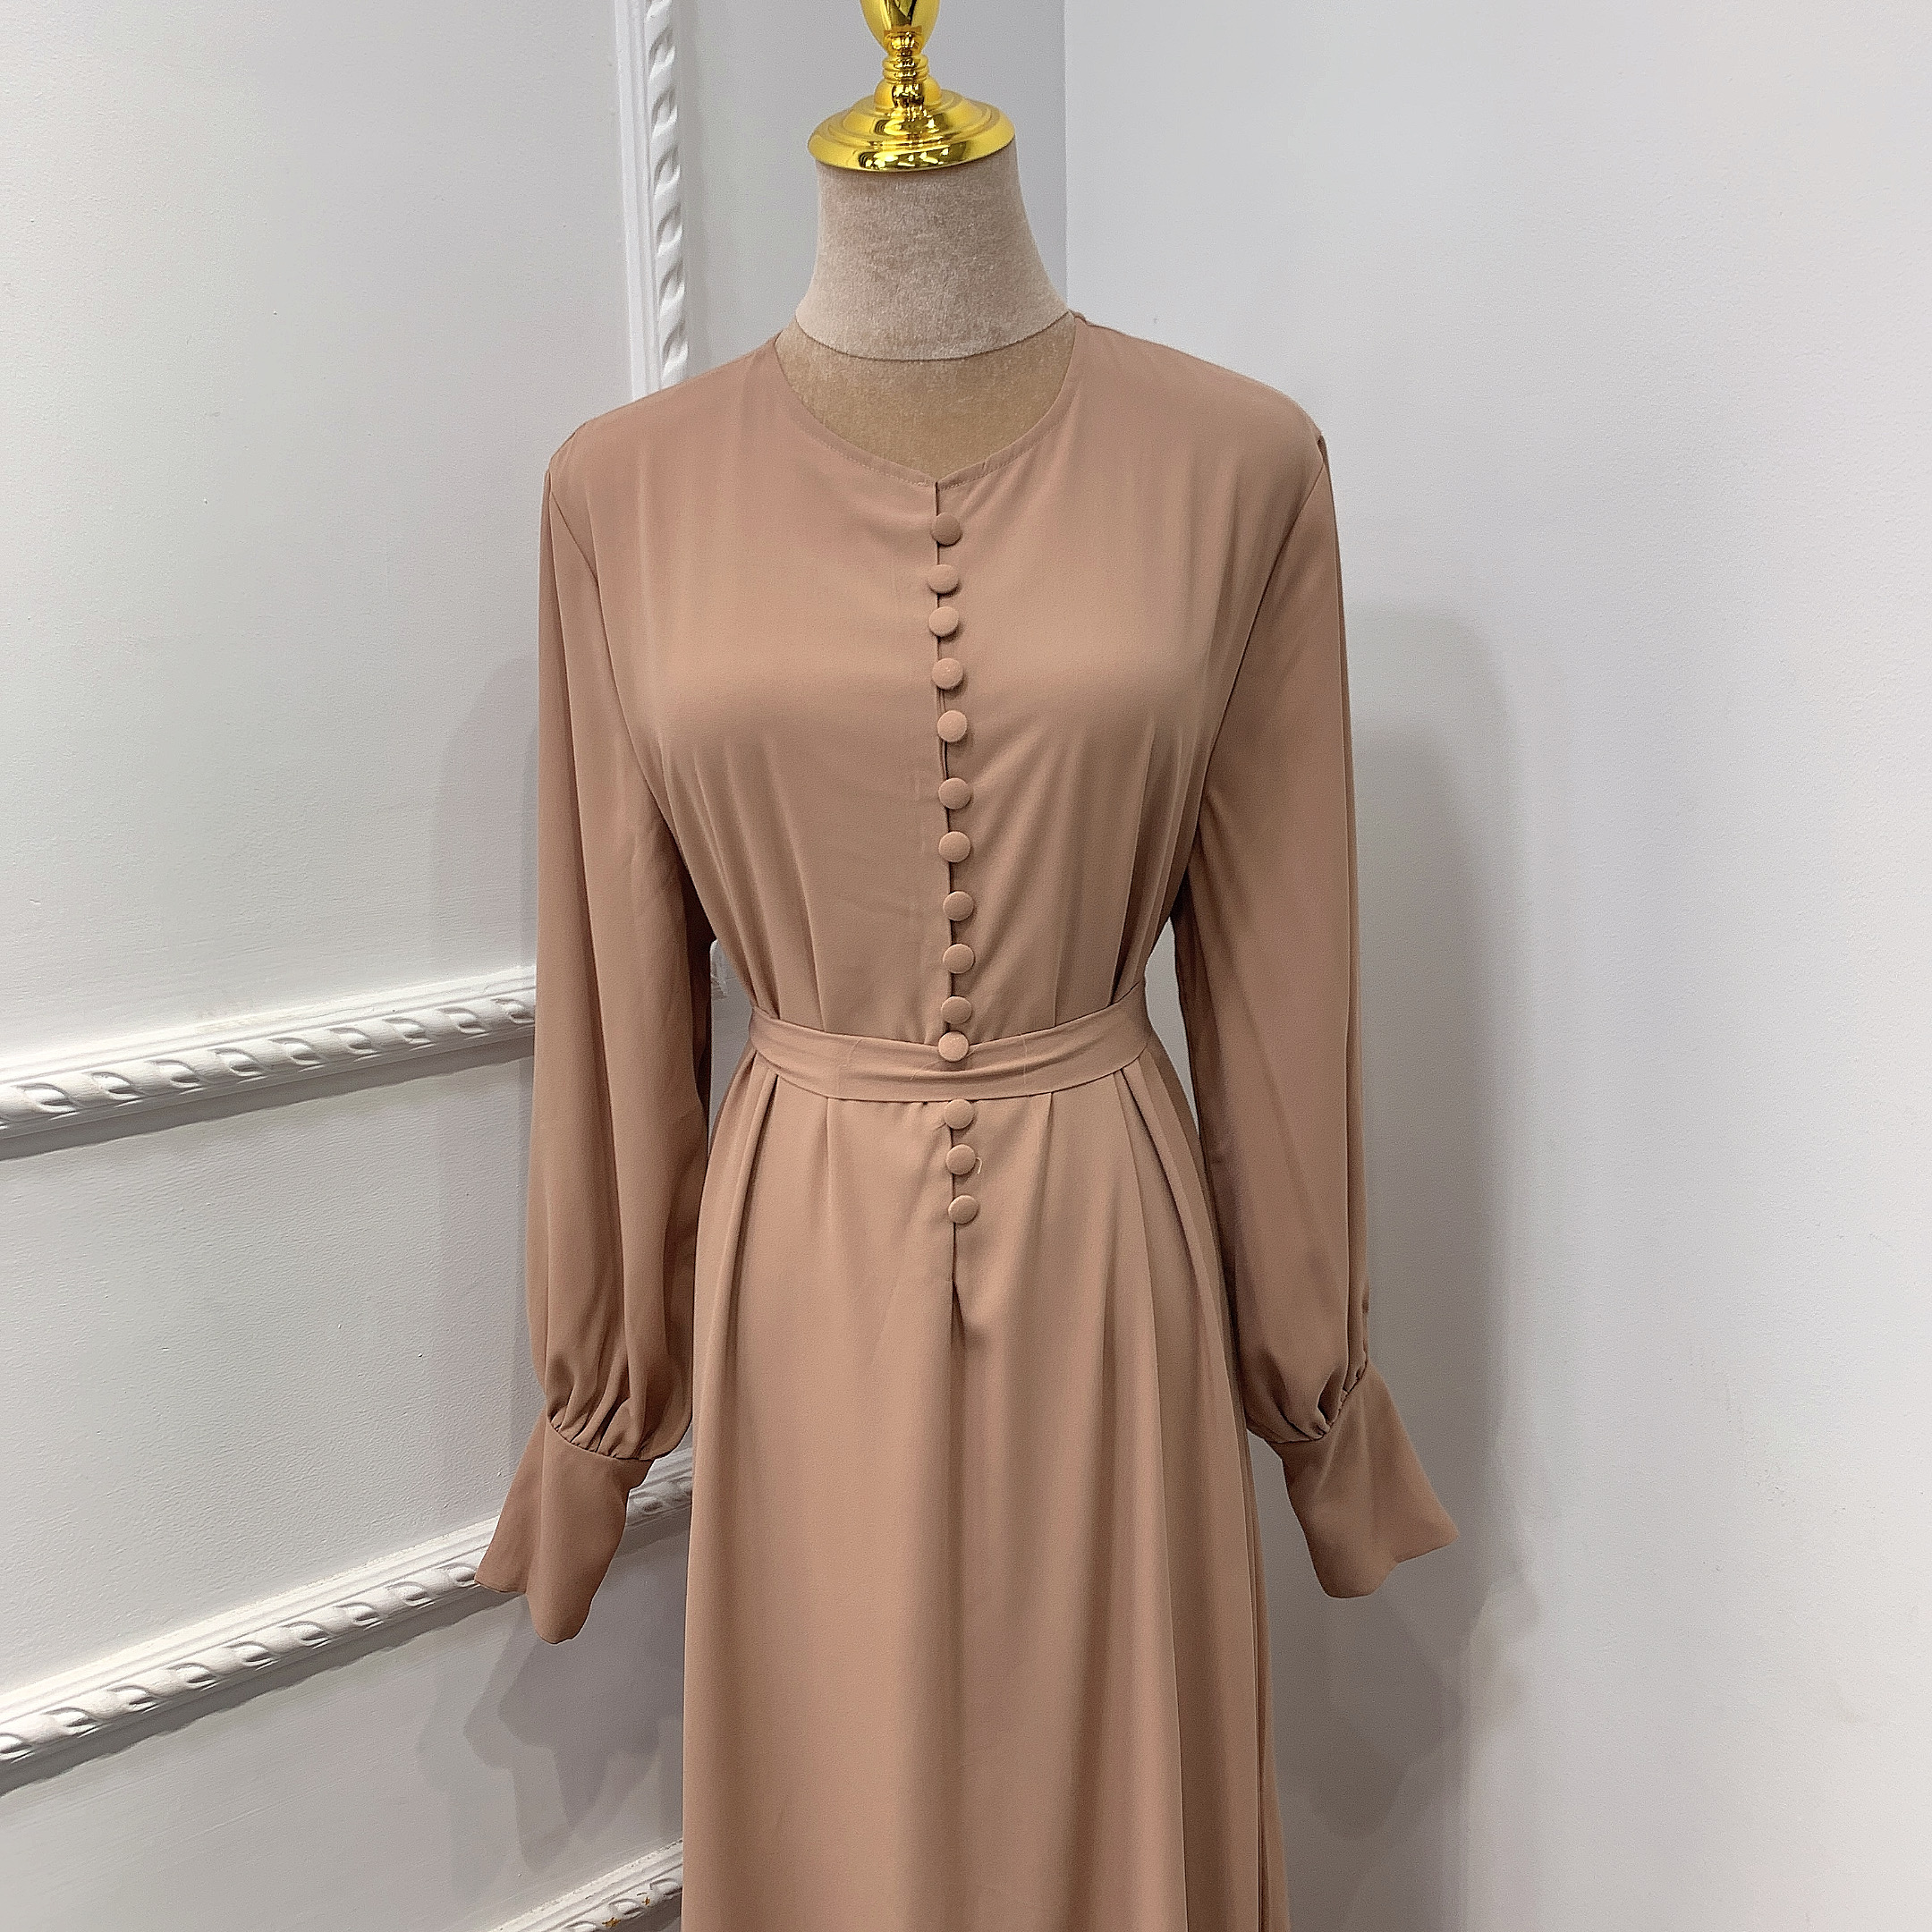 2021 Modern Chiffon Islamic dress elegant Thick chiffon Islamic maxi abaya EID Muslim modern Chiffon Abaya wholesale